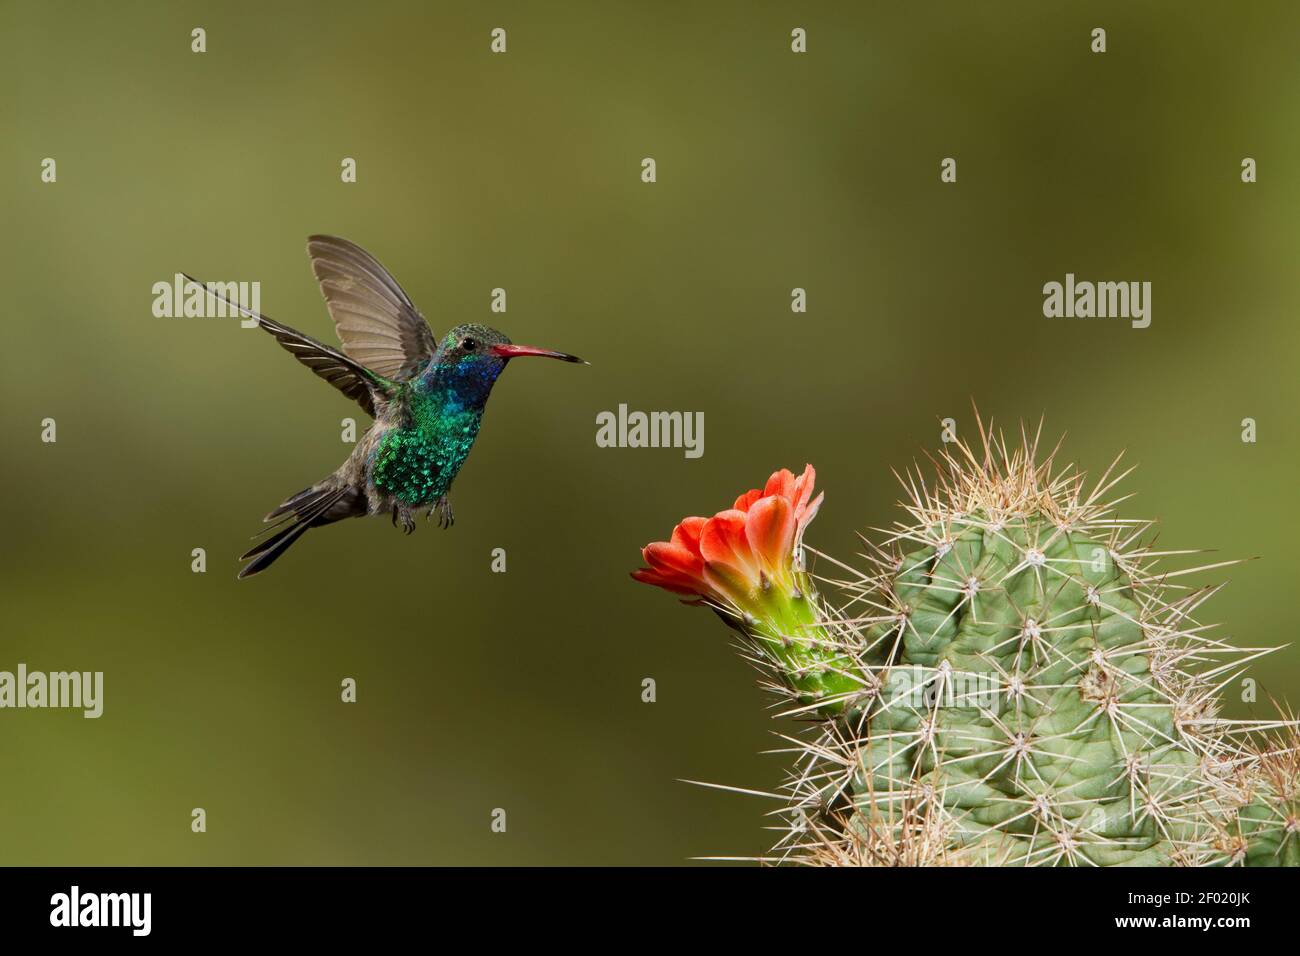 Broad-billed Hummingbird male, Cynanthus latirostris, feeding at cactus flower. Stock Photo